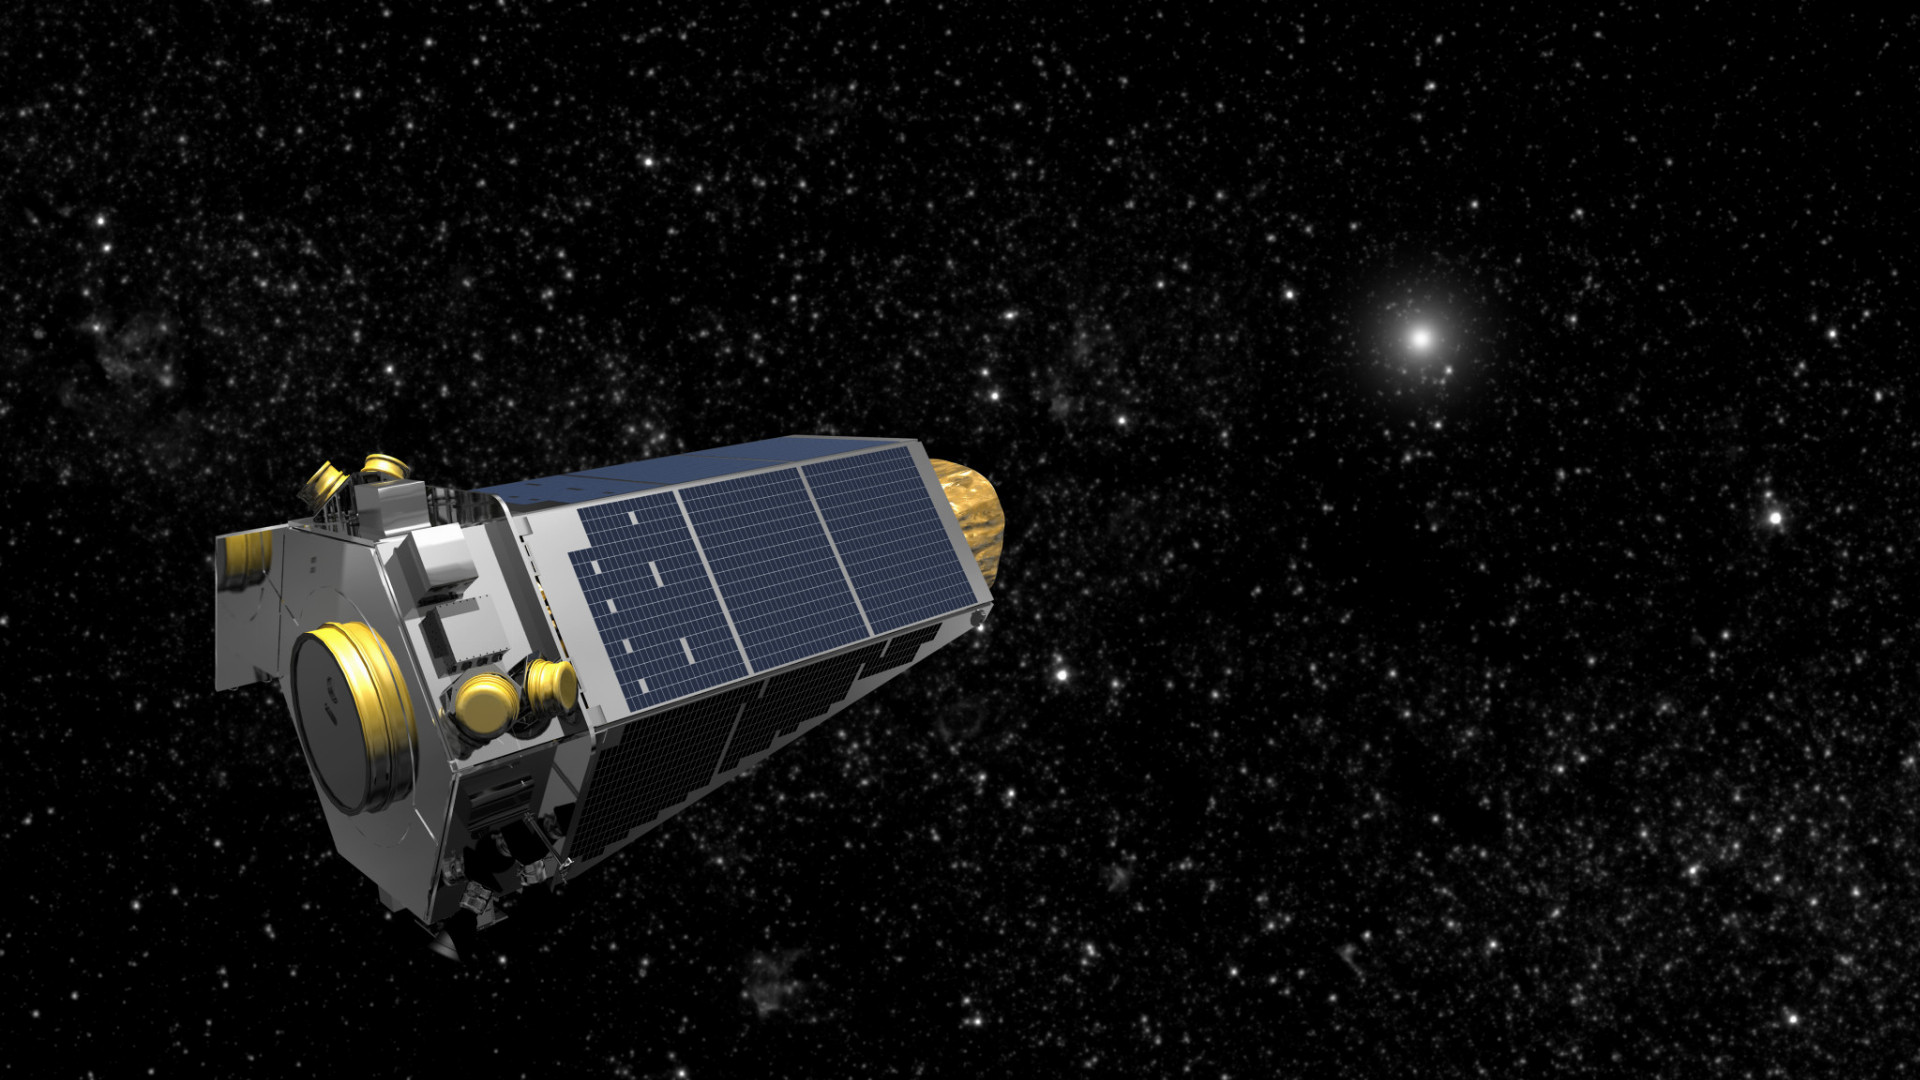 Práca Hubbleovho vesmírneho teleskopu sa nedá ignorovať, ale s teleskopom Jamesa Webba, ktorého štart je naplánovaný v roku 2018 sa misia toho Hubblovho zmení. Zatiaľ čo Webb prevezme svoje povinnosti v oblasti zobrazovania hlbokých priestorov vesmíru, Hubble sa bude čoraz viac používať na vyhľadávanie exoplanét mimo našej slnečnej sústavy, ktoré obiehajú inú hviezdu ako je Slnko. 

Exoplanéty sú momentálne najhorúcejšími oblasťami výskumu v astronómii a hlavnou misiou hľadajúcou cudzie svety je Keplerov vesmírny teleskop.
Po objavení 2 330 potvrdených exoplanét v malej oblasti Mliečnej dráhy boli Keplerove meracie zariadenia poškodené a teraz už jeho pohľad nie je taký presný. 

Naďalej však nájde exoplanéty v neočakávaných oblastiach vesmíru. Hubble nás možno nadchýnal veľkolepými zábermi, ale je to práve Kepler, ktorý vytvoril nové obsesie s hľadaním druhej Zeme.
